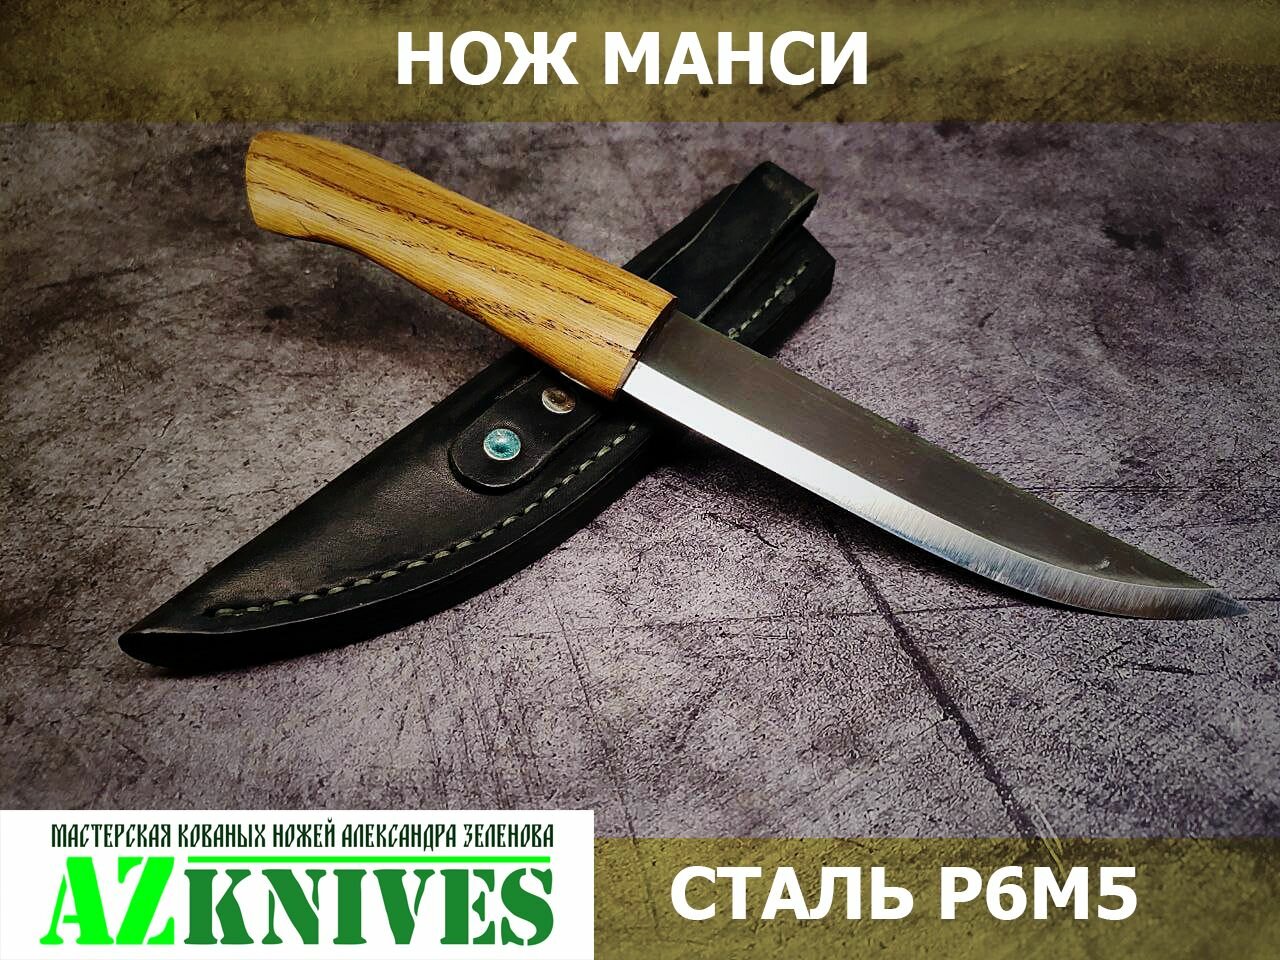 Кованый якутский нож "Манси" с кожаными ножнами